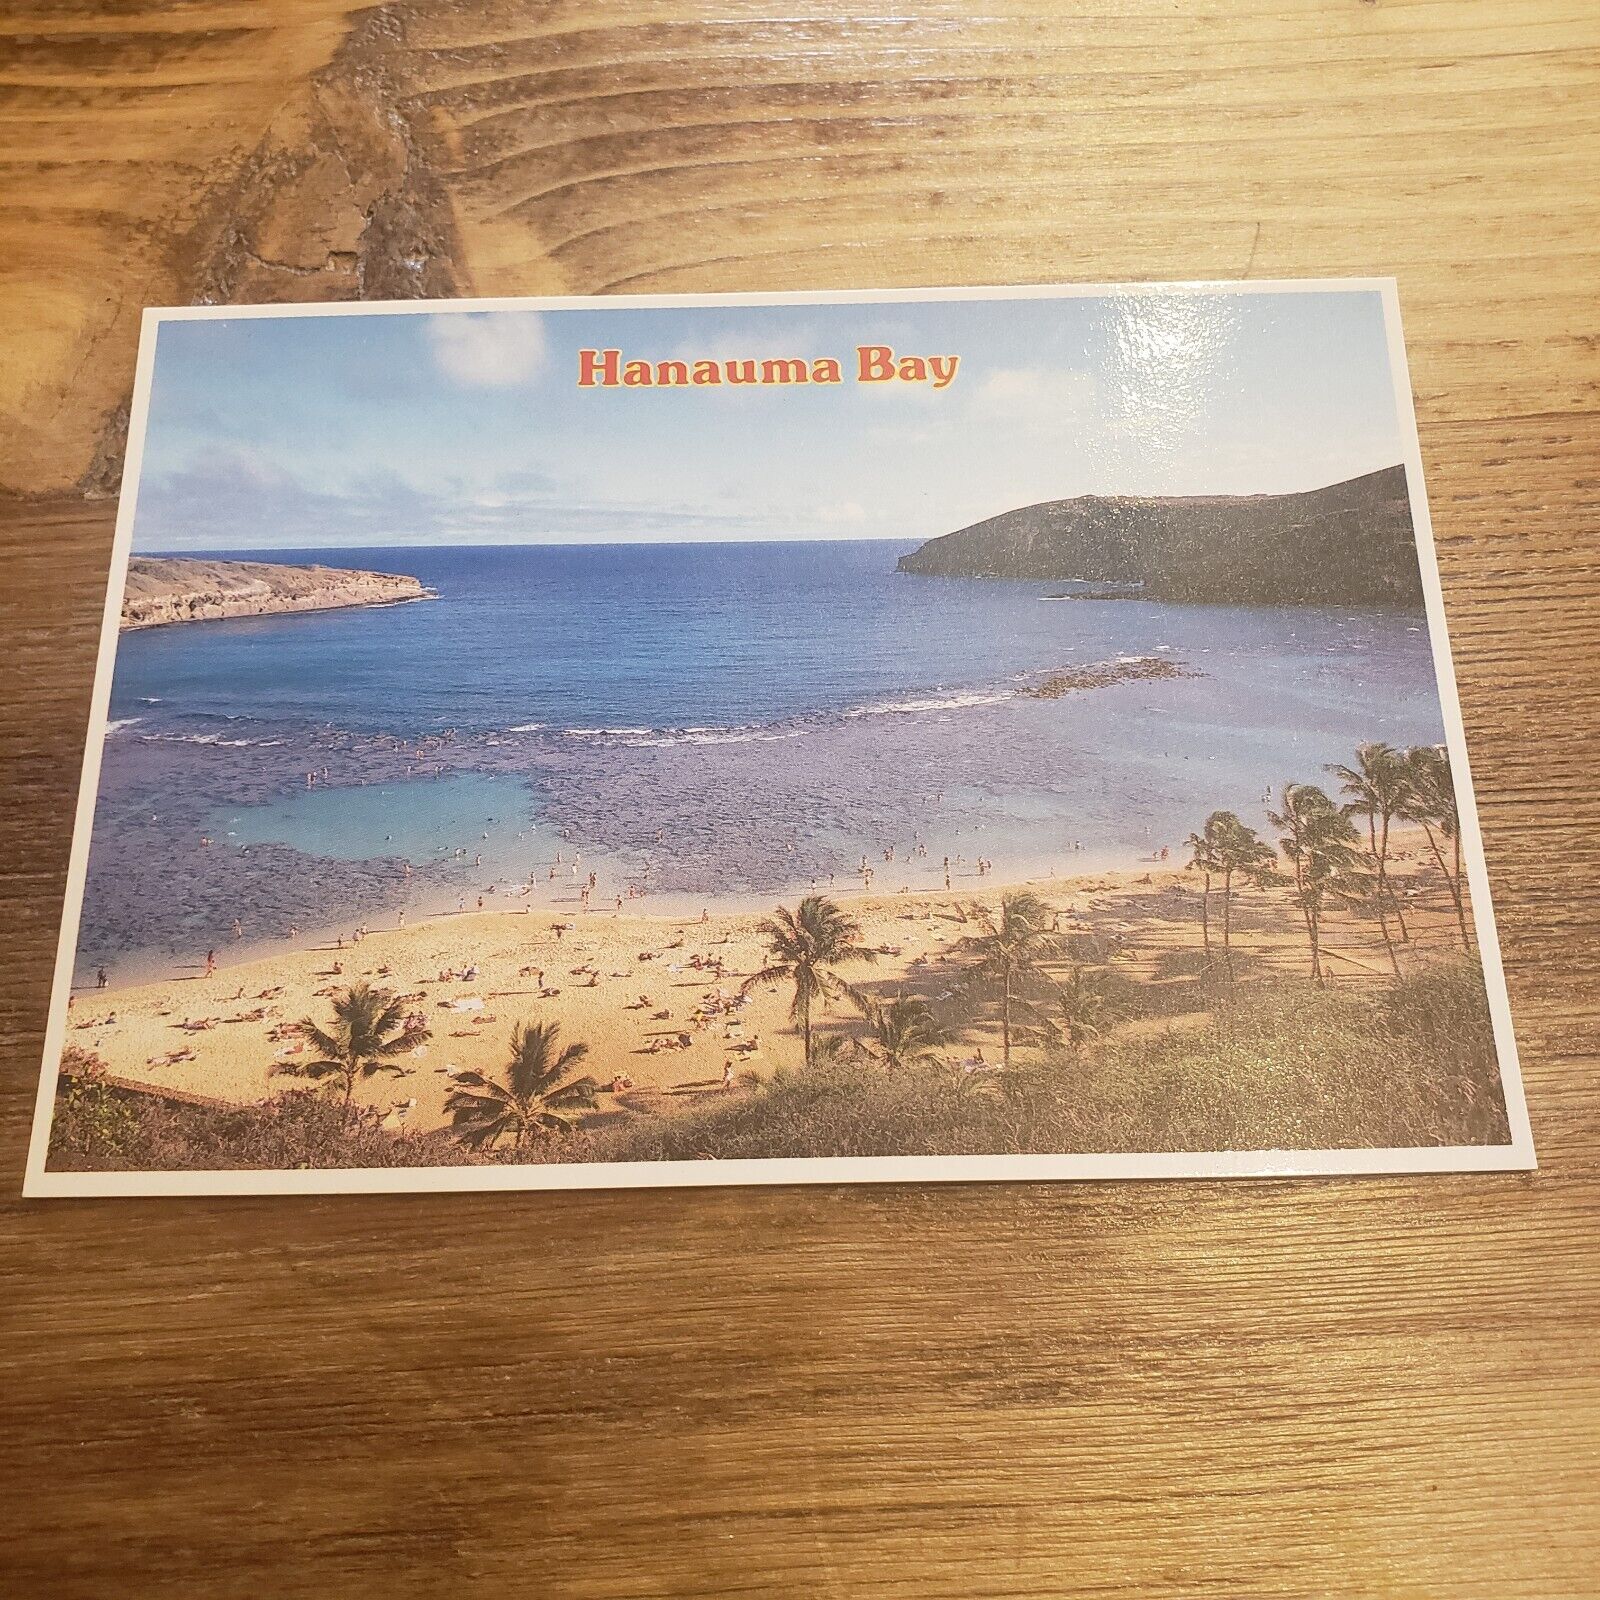 Hanauma Bay State Park Beach Aerial View Hawaii Postcard Photo Souvenir Island